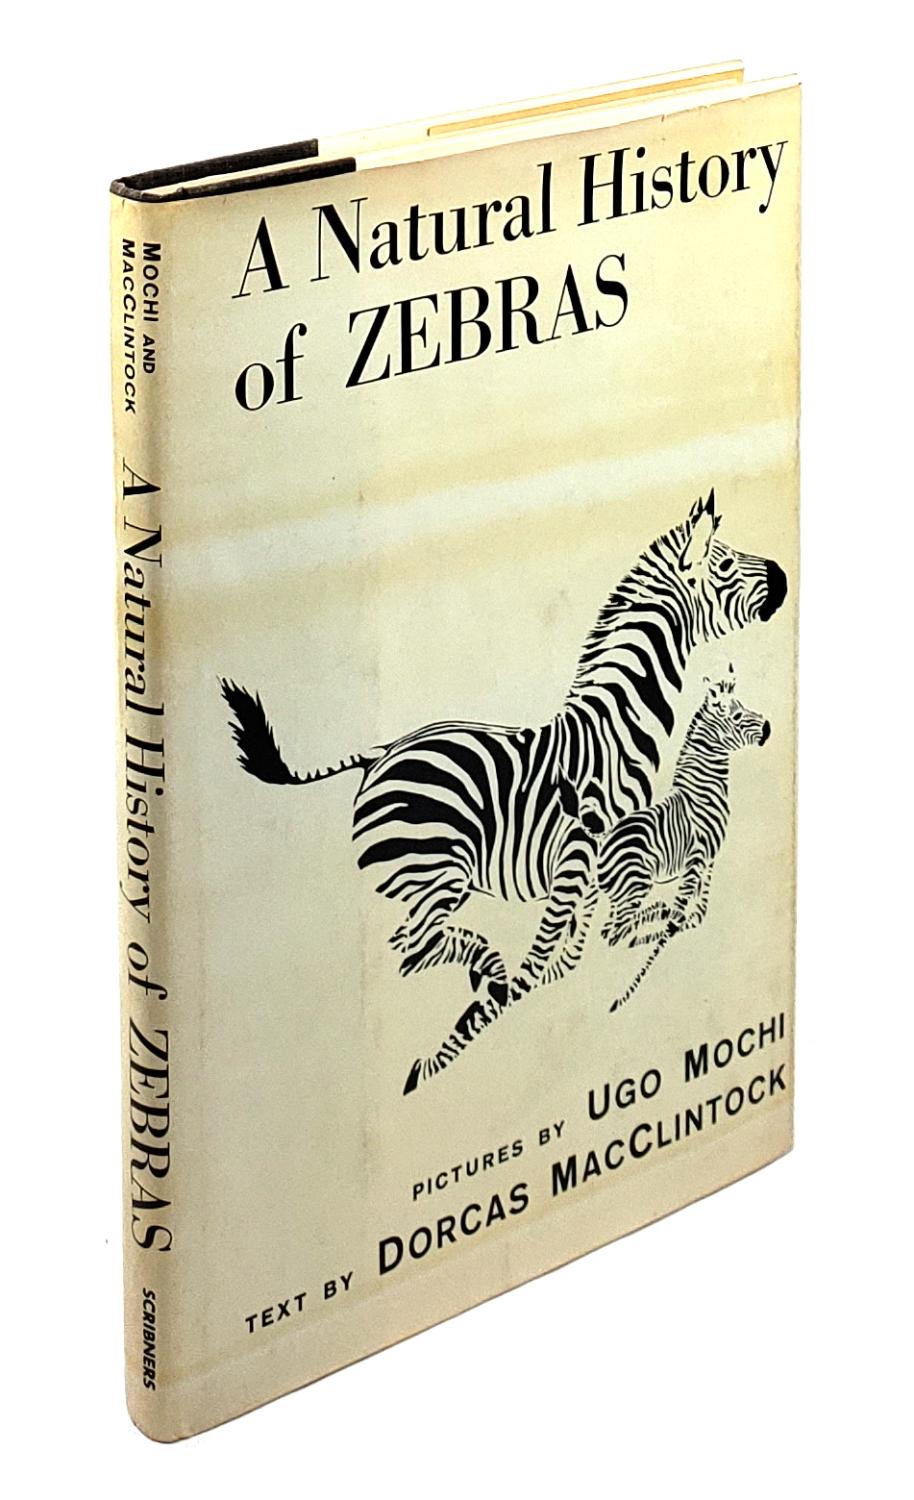 A Natural History of Zebras - Dorcas MacClintock